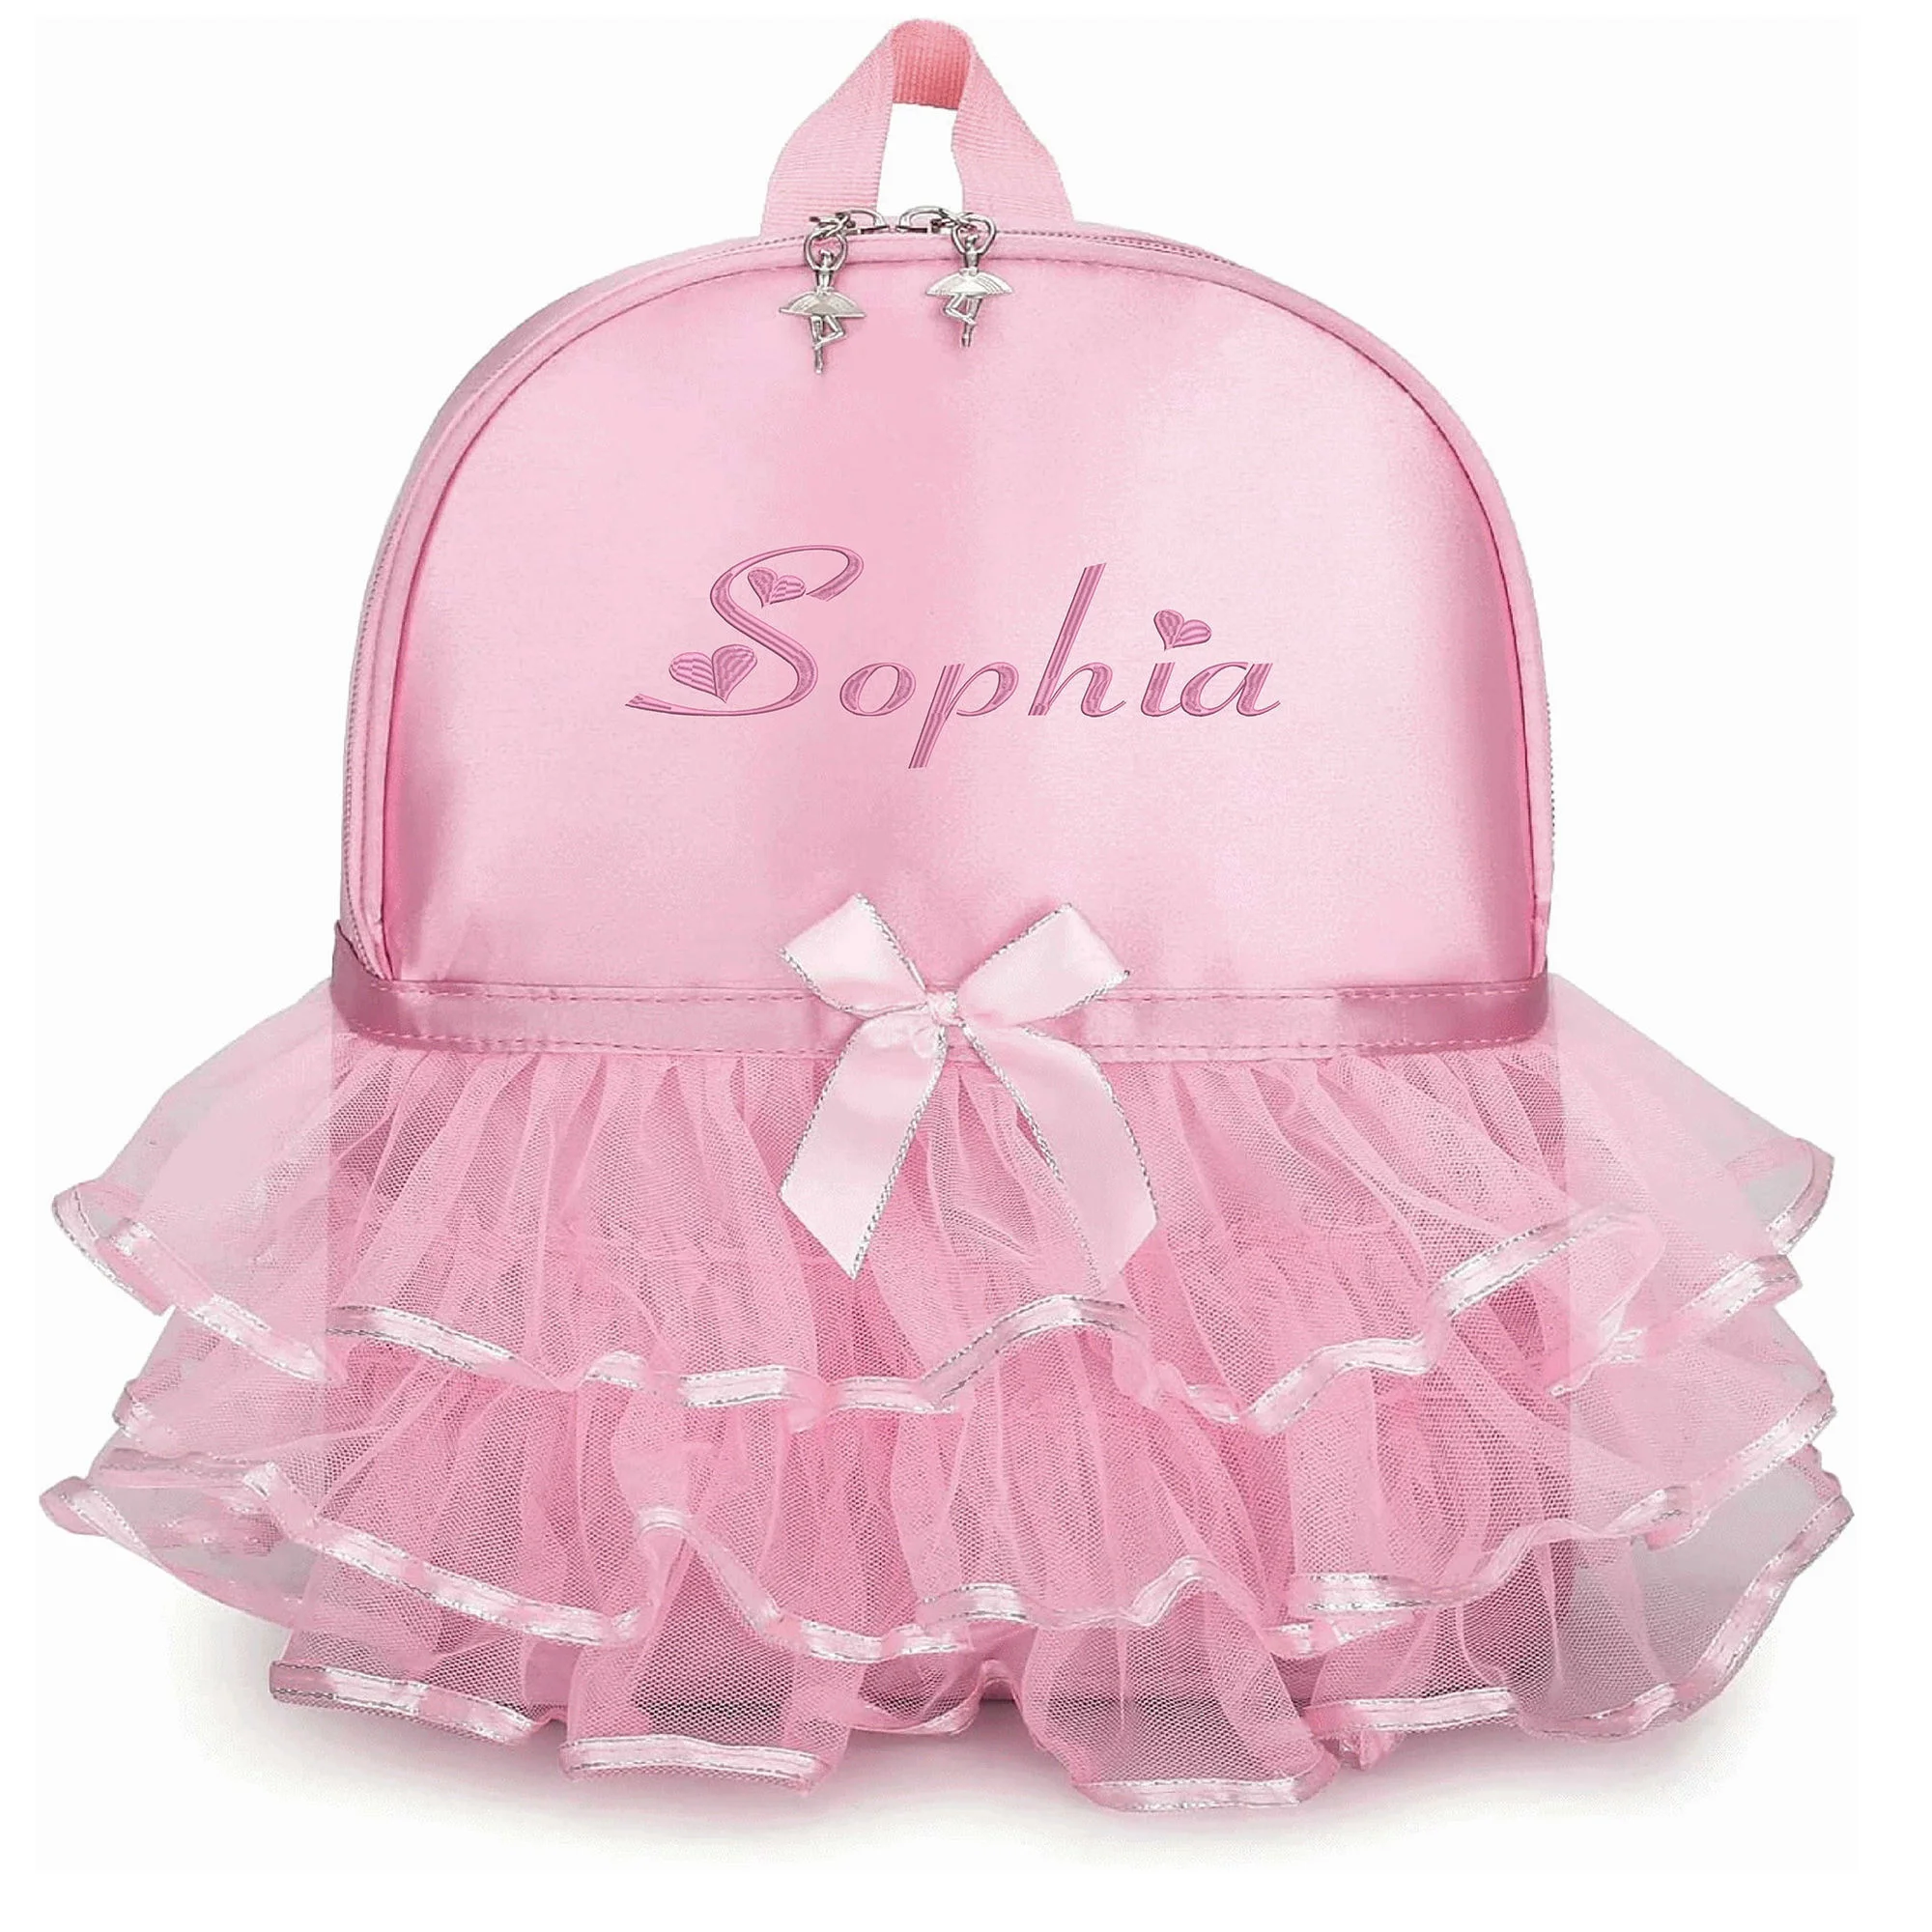 

Персонализированный вышитый рюкзак принцессы балерины, Танцевальная сумка для маленьких девочек, нейлоновый рюкзак с именем под заказ, рюкзак, подарок для ребенка